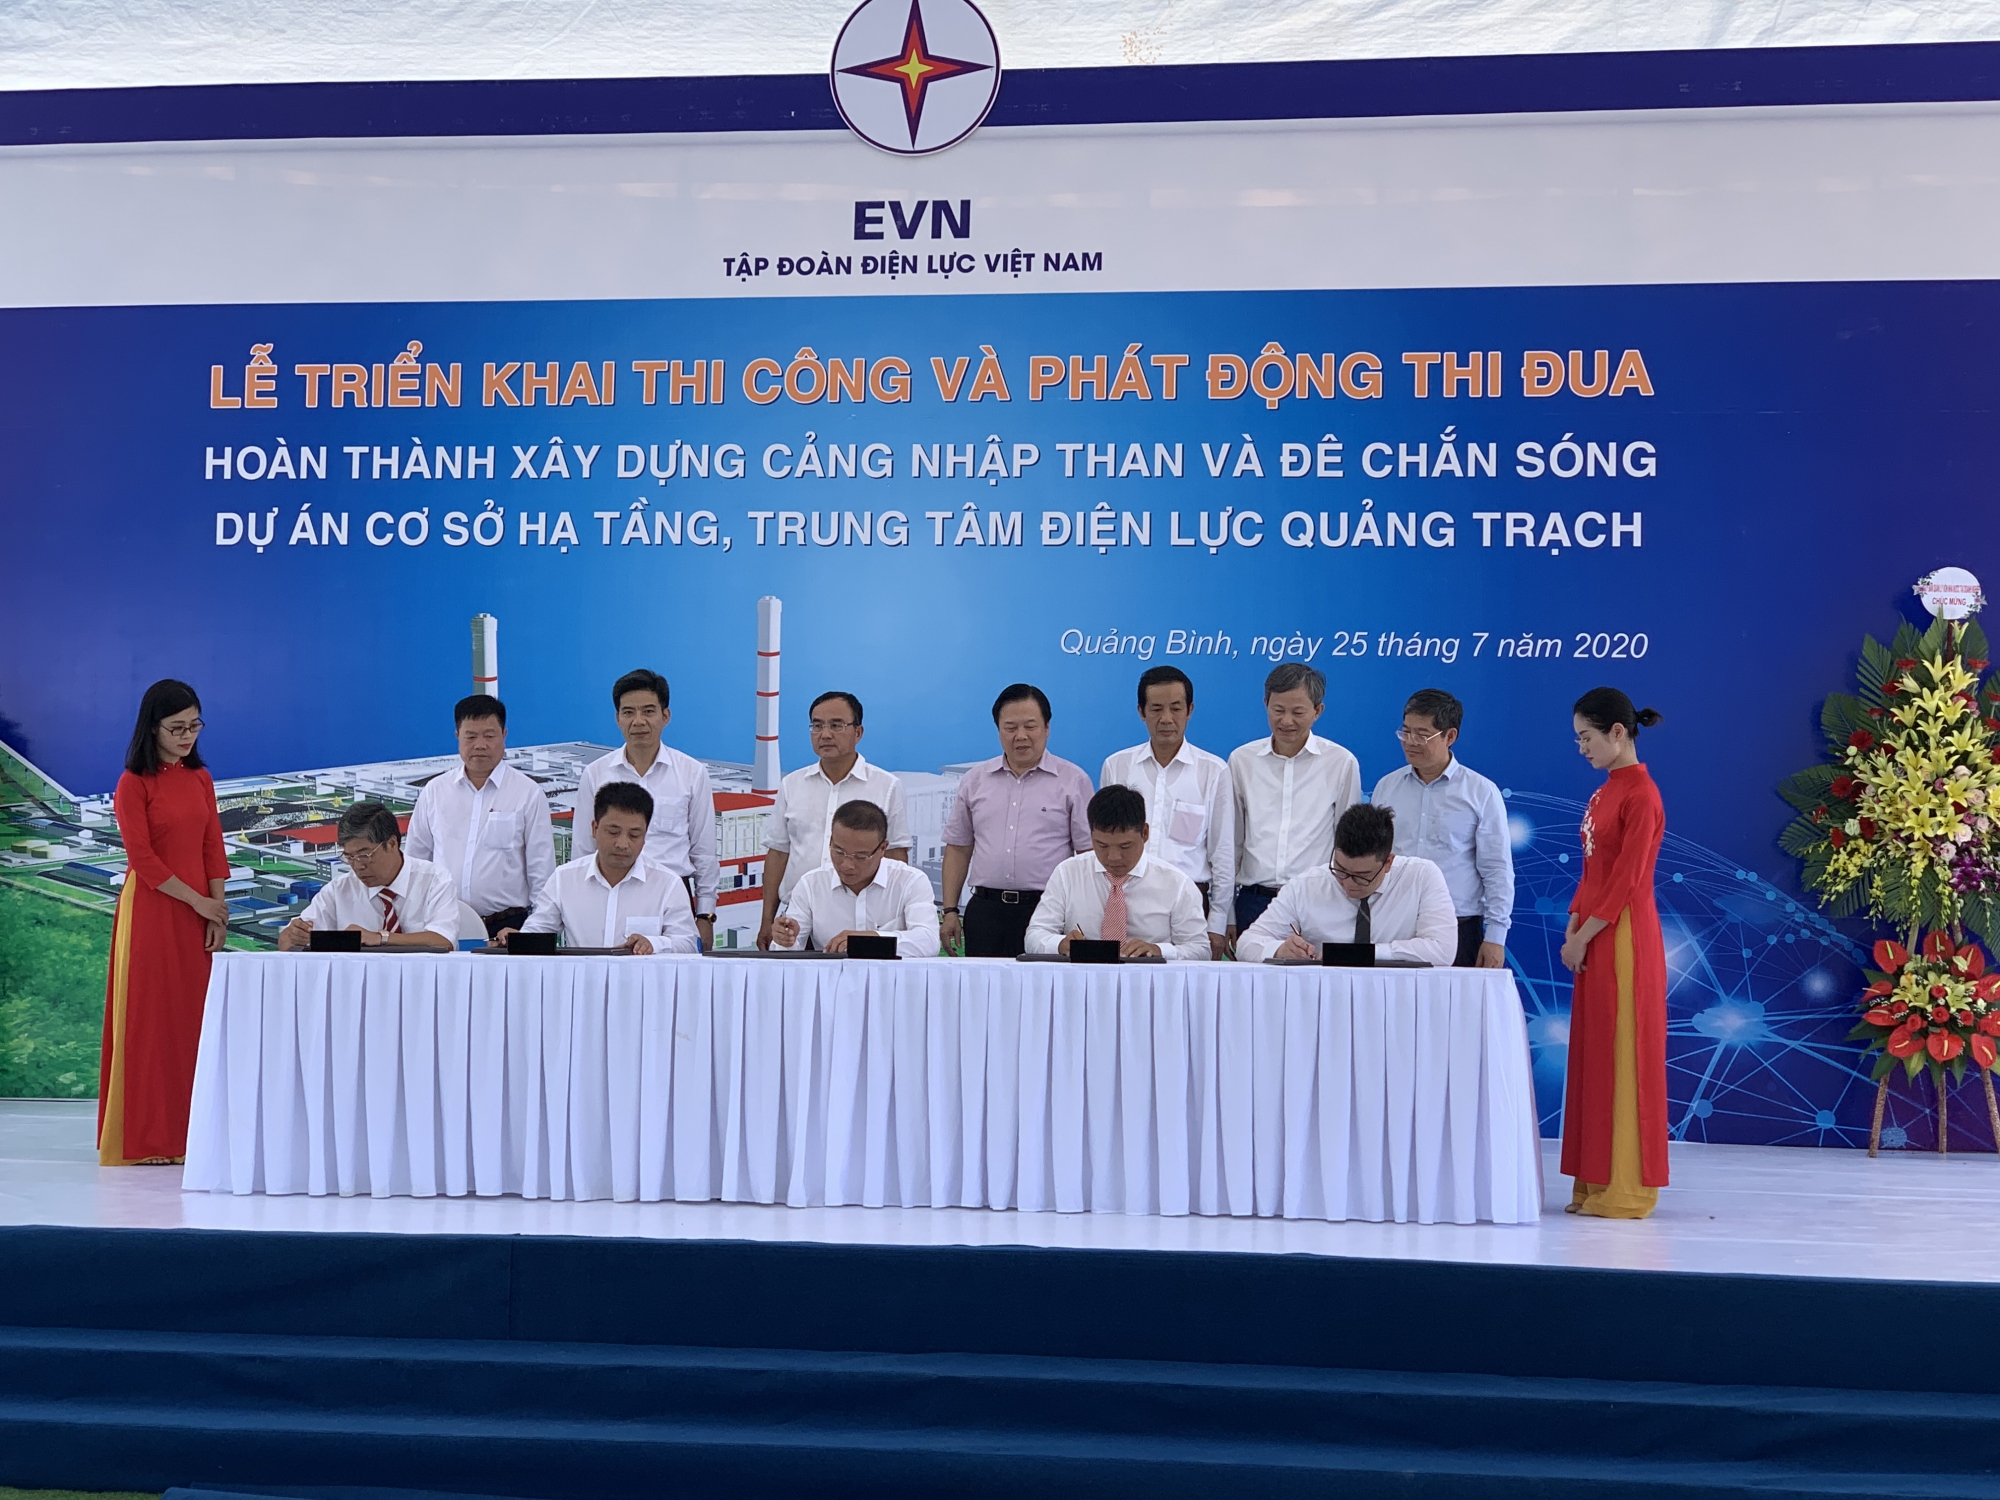 Triển khai thi công và phát động thi đua các Dự án cơ sở hạ tầng thuộc Trung tâm Điện lực Quảng Trạch